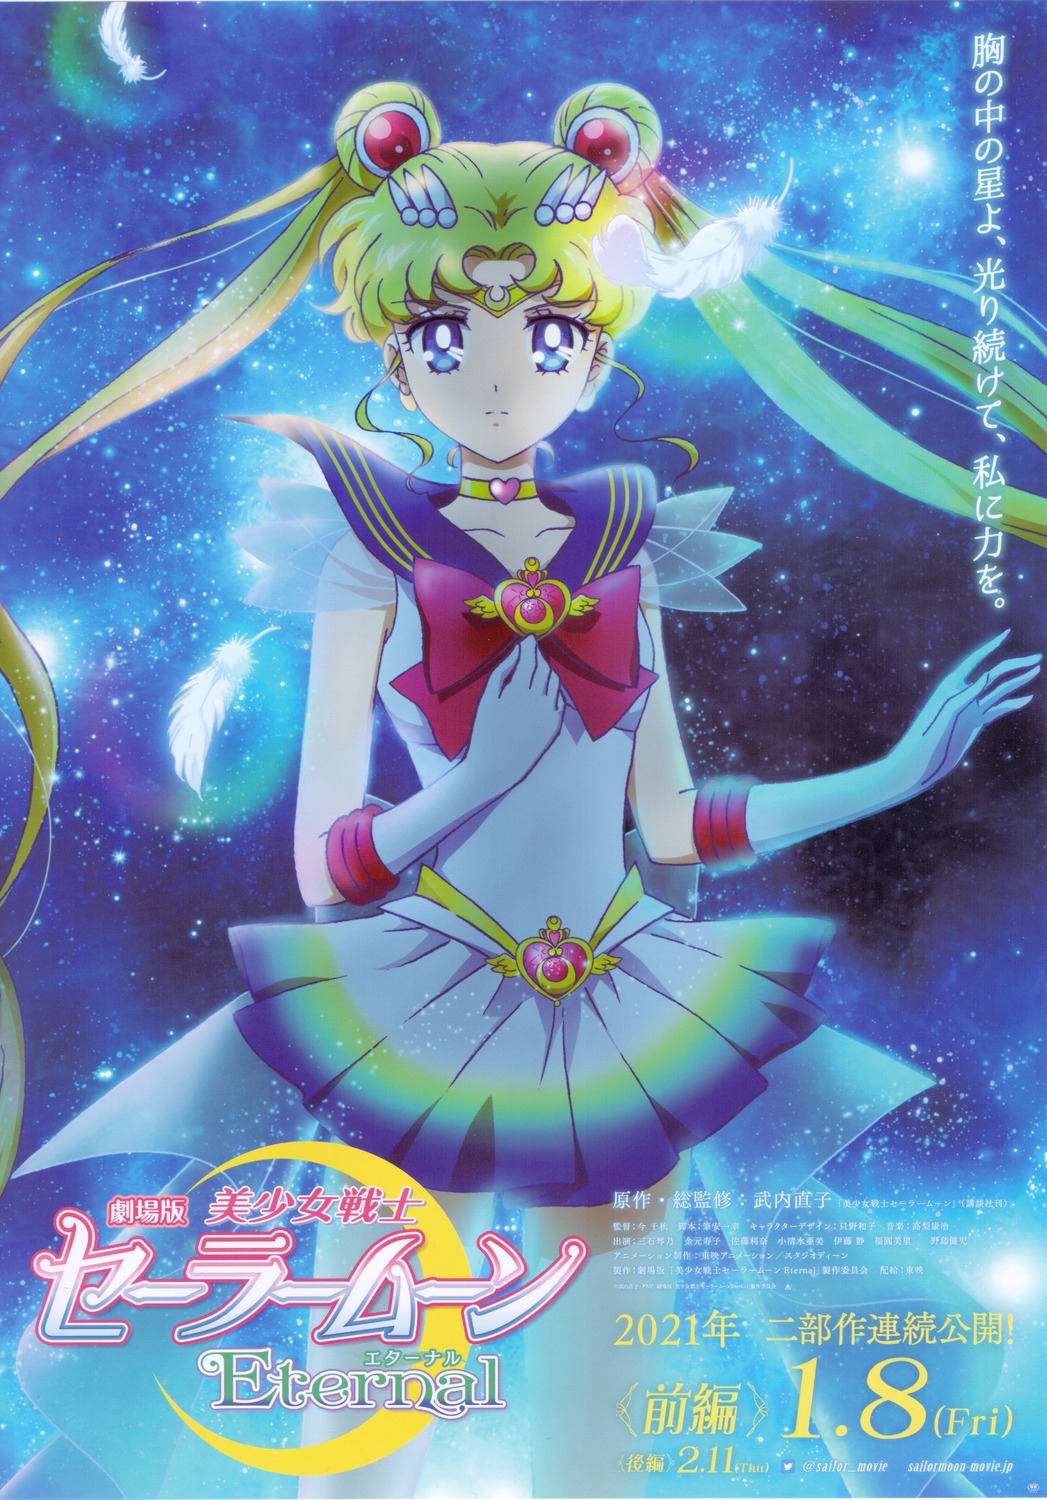 Extra Large Movie Poster Image for Gekijouban Bishoujo Senshi Sailor Moon Eternal (#1 of 4)